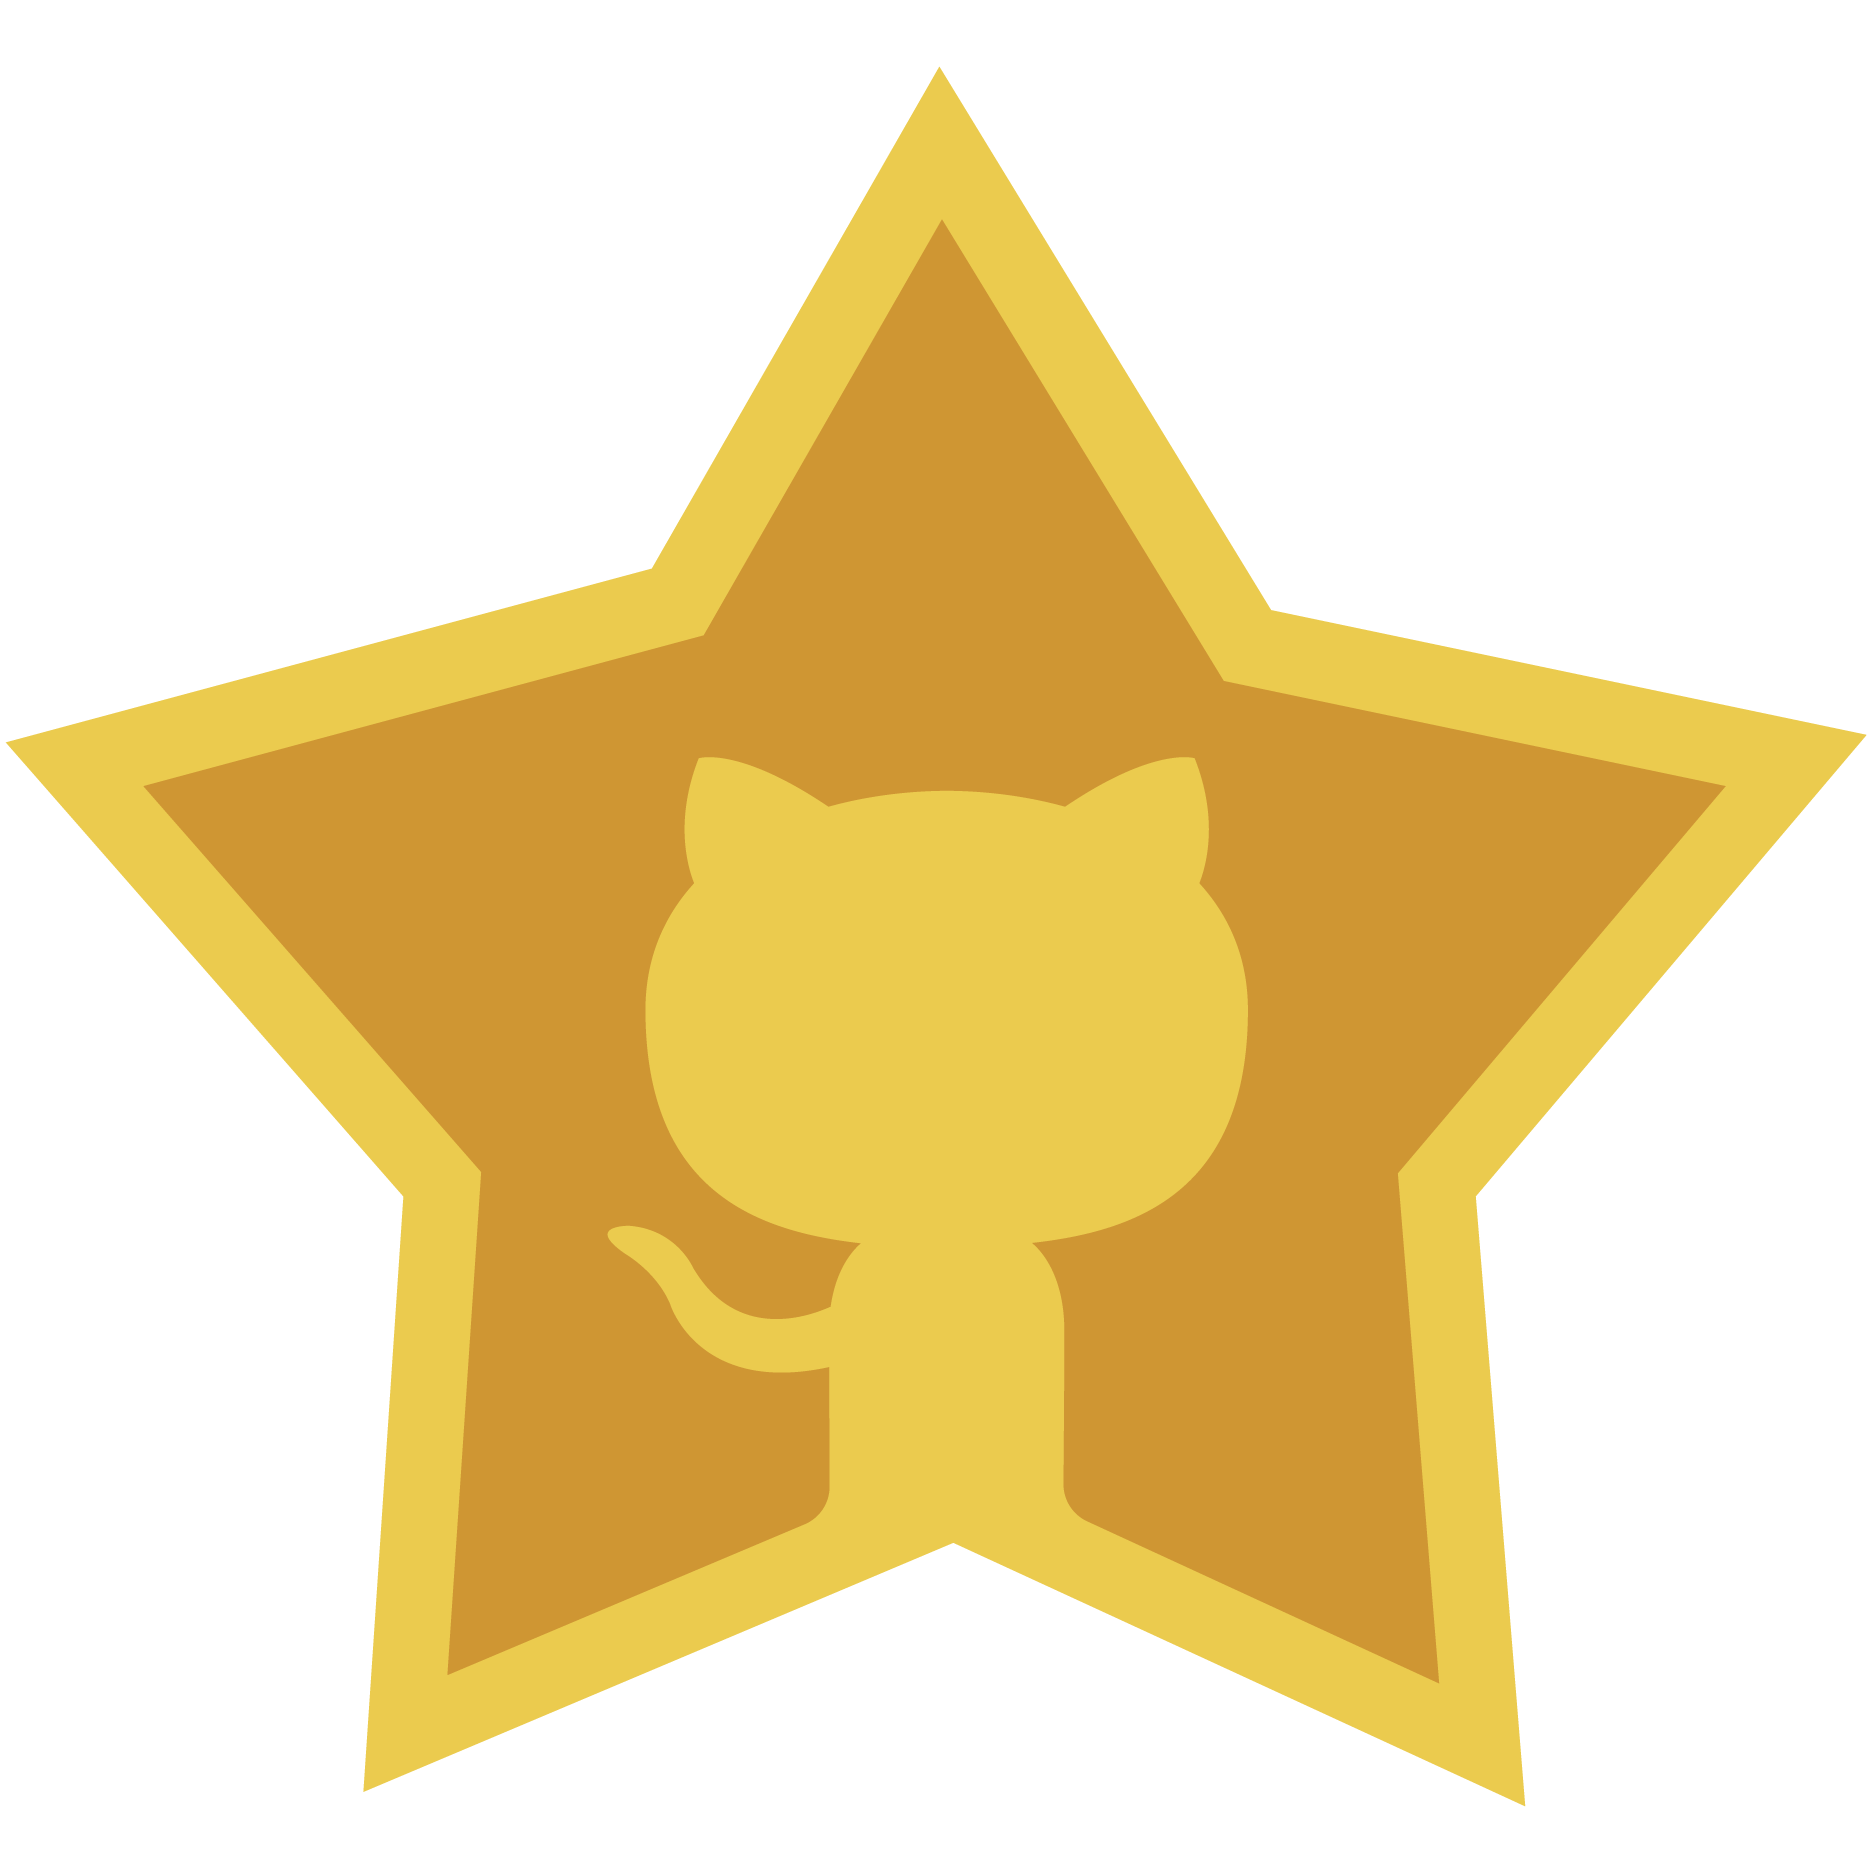 GitHub Star programme member